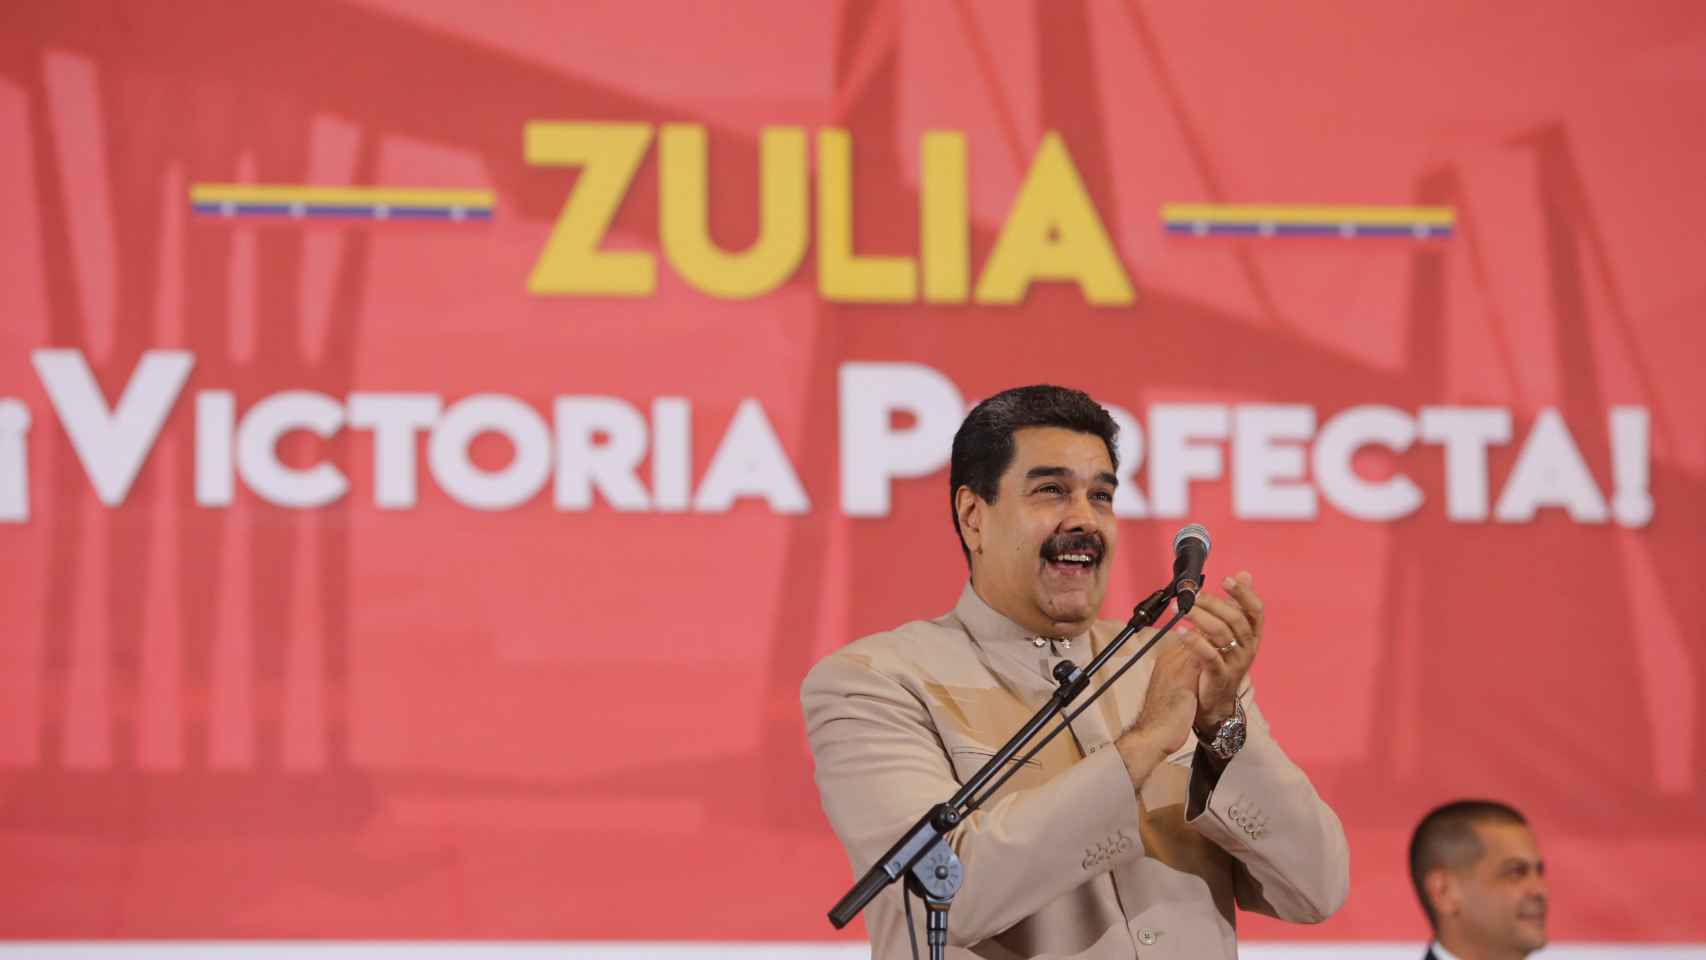 Maduro durante un mitin en el estado de Zuila.